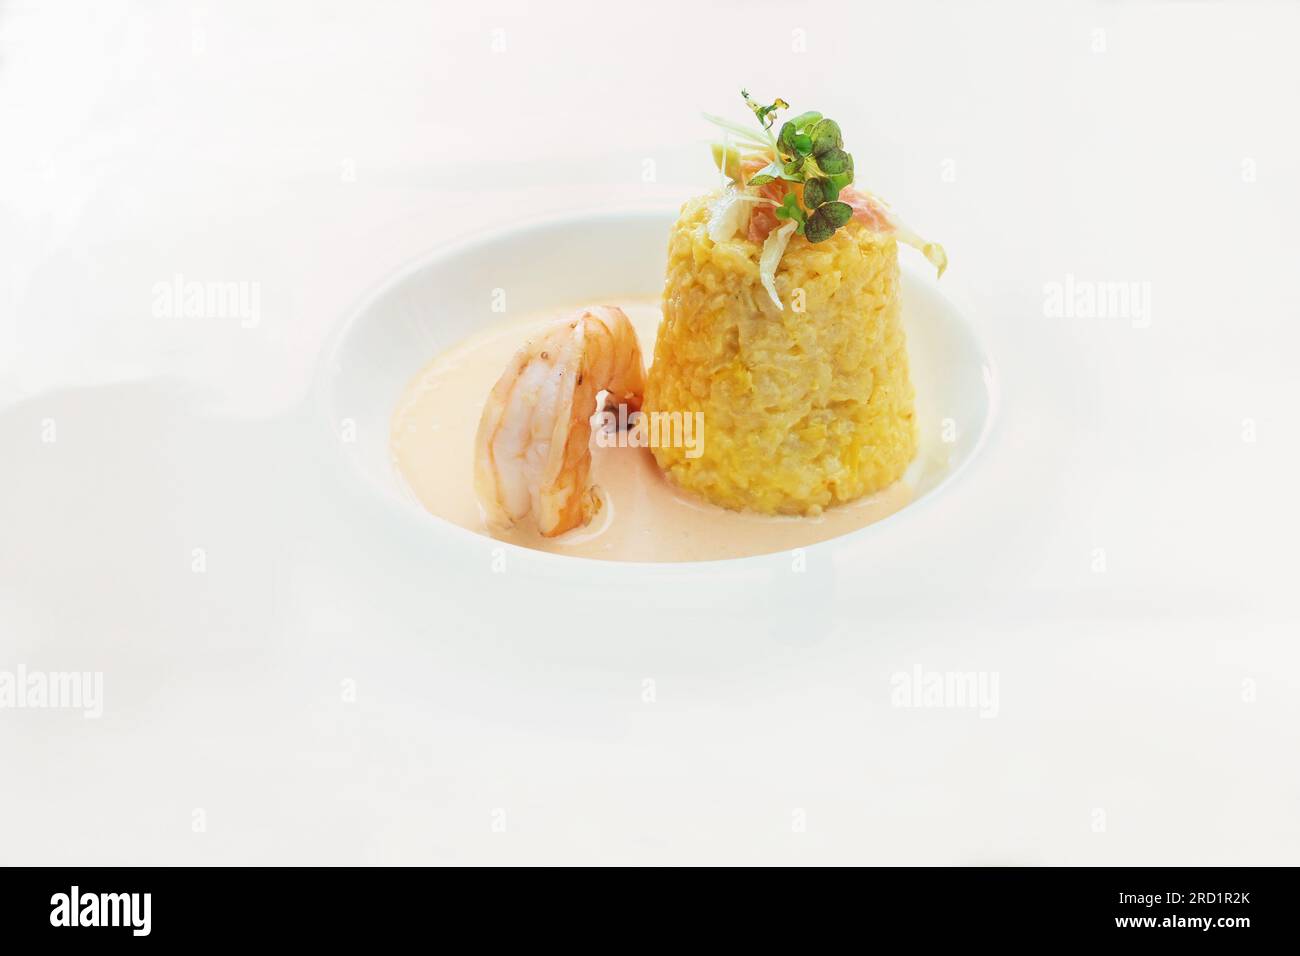 Risotto au safran en forme de cône avec garniture aux herbes et aux légumes, une grande sauce aux crevettes et crustacés dans une assiette blanche moderne, délicieux plat de fruits de mer, c Banque D'Images